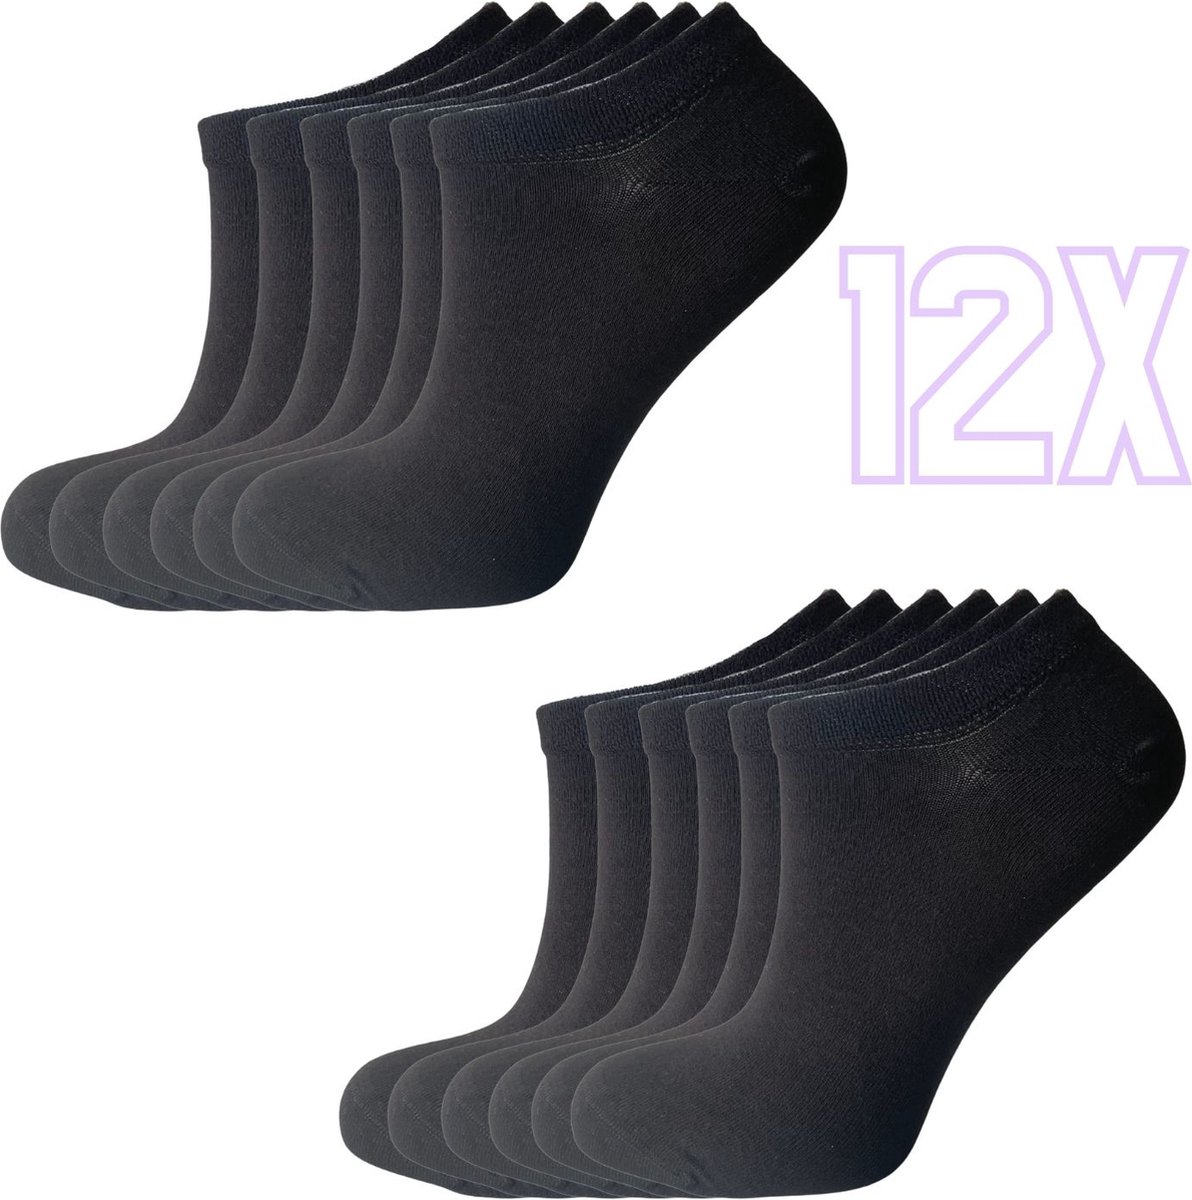 12x Bamboe Sneakersokken Naadloos - Unisex - 12 paar - Zwart - Maat 41-46 - Bamboe 84% - Sokken